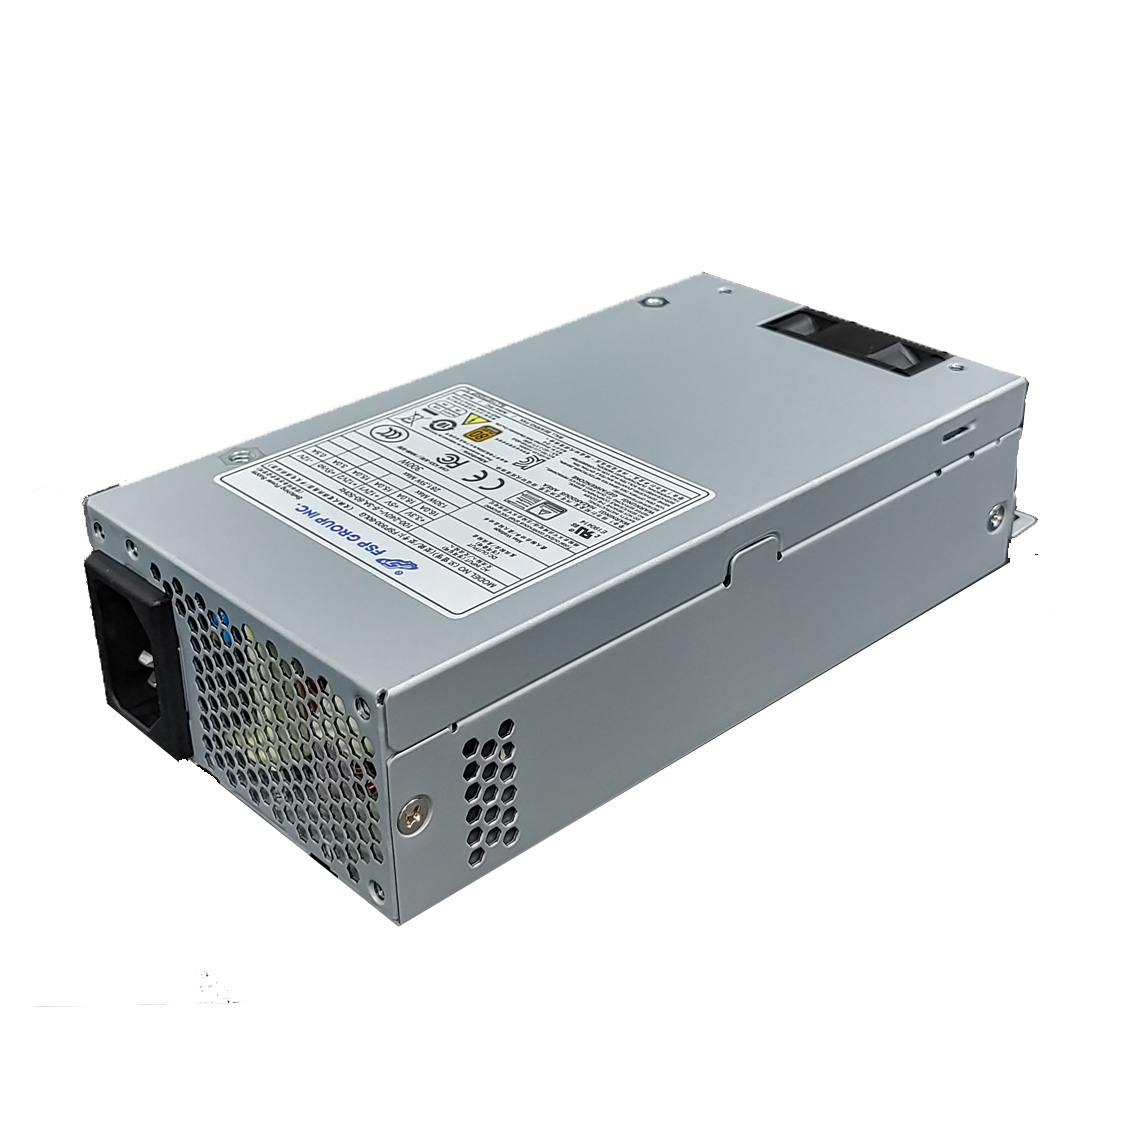 산업용 파워 FSP300-60LG 300W 1U Flex 파워 [품절]